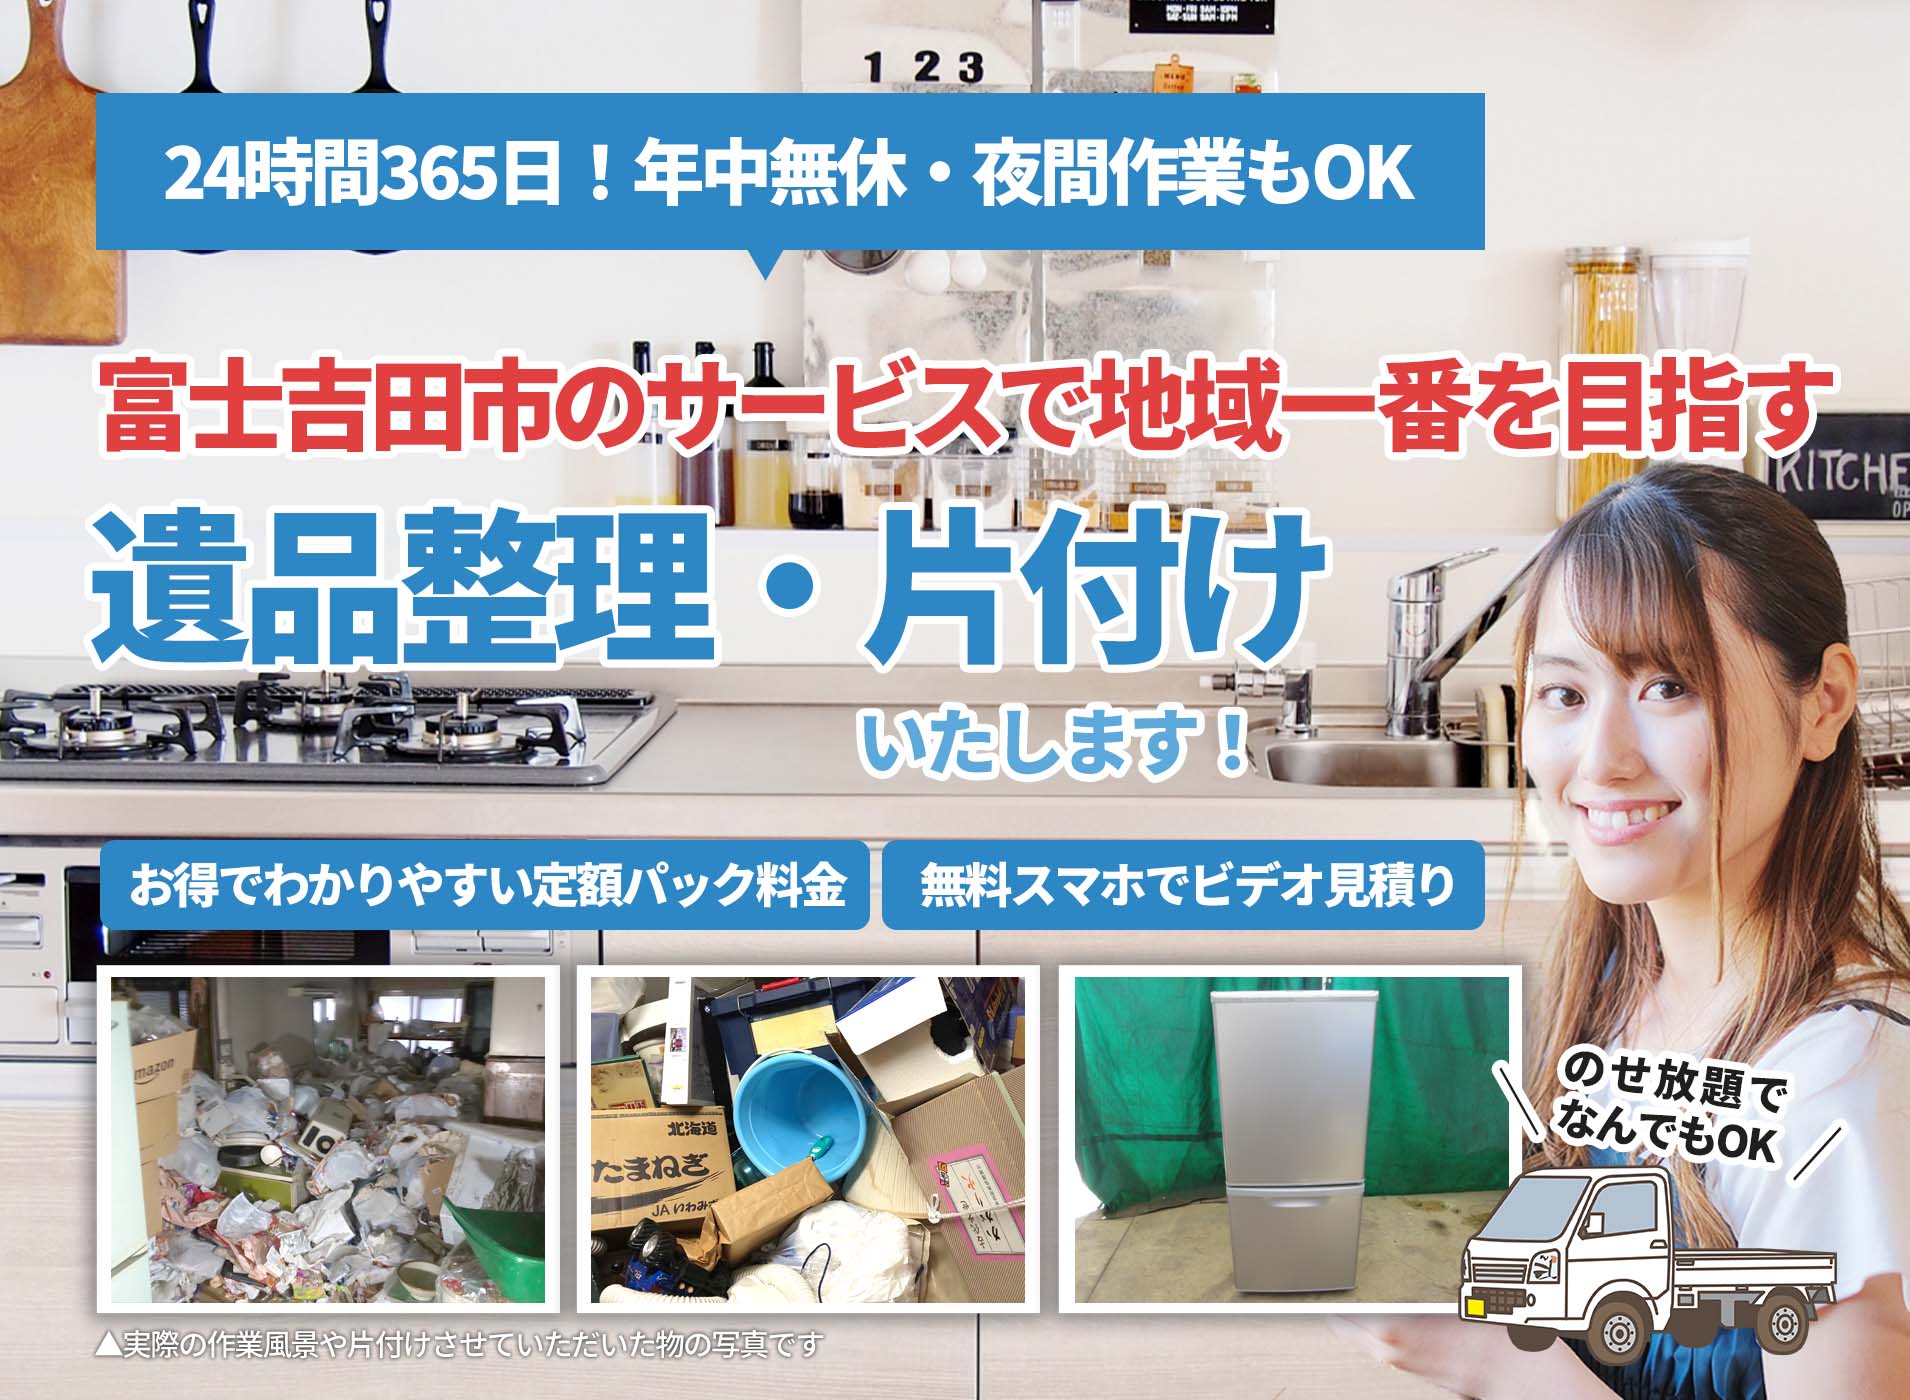 富士吉田市のサービスで地域一番を目指すＬＴＪ遺品整理隊の遺品整理サービス